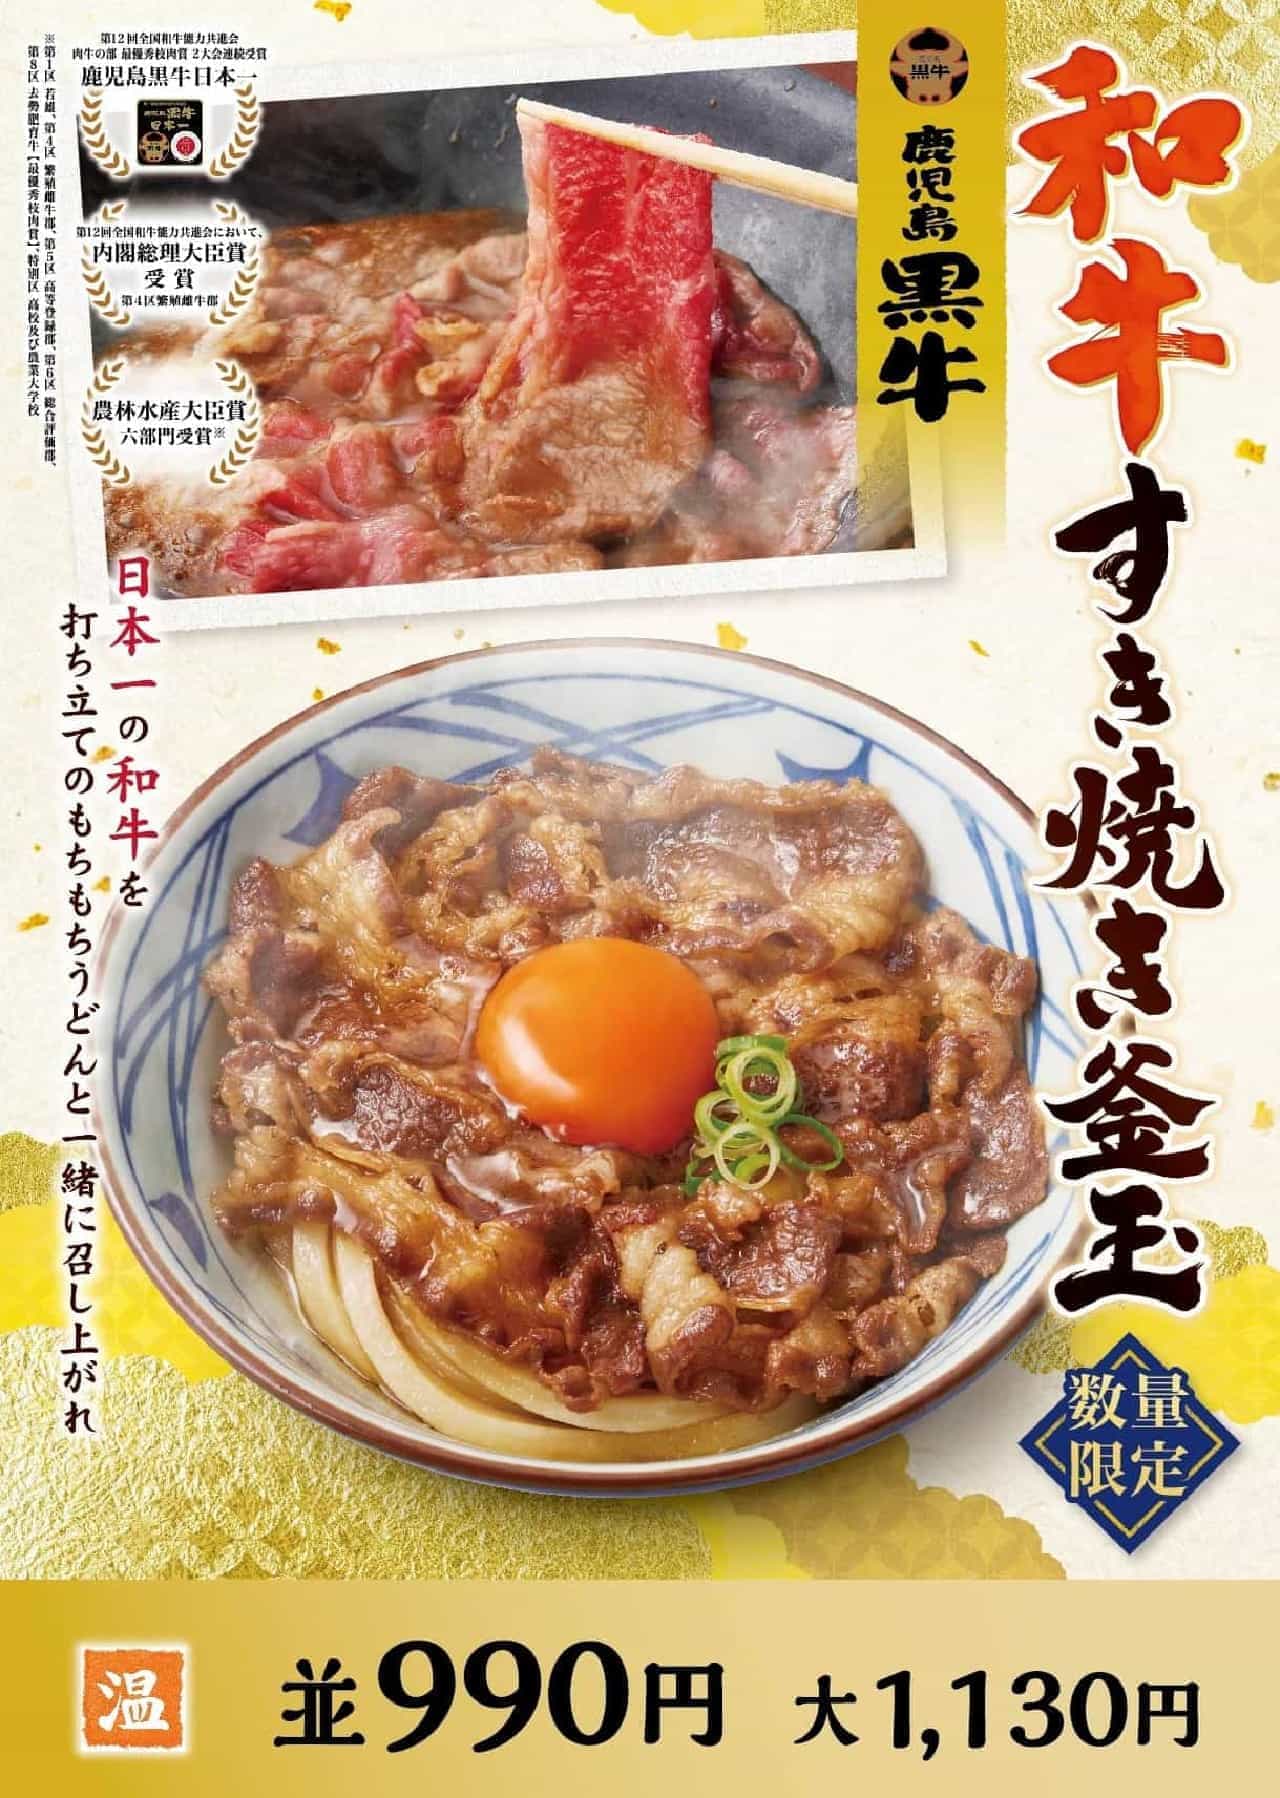 丸亀製麺「鹿児島黒牛 和牛すき焼き釜玉うどん」